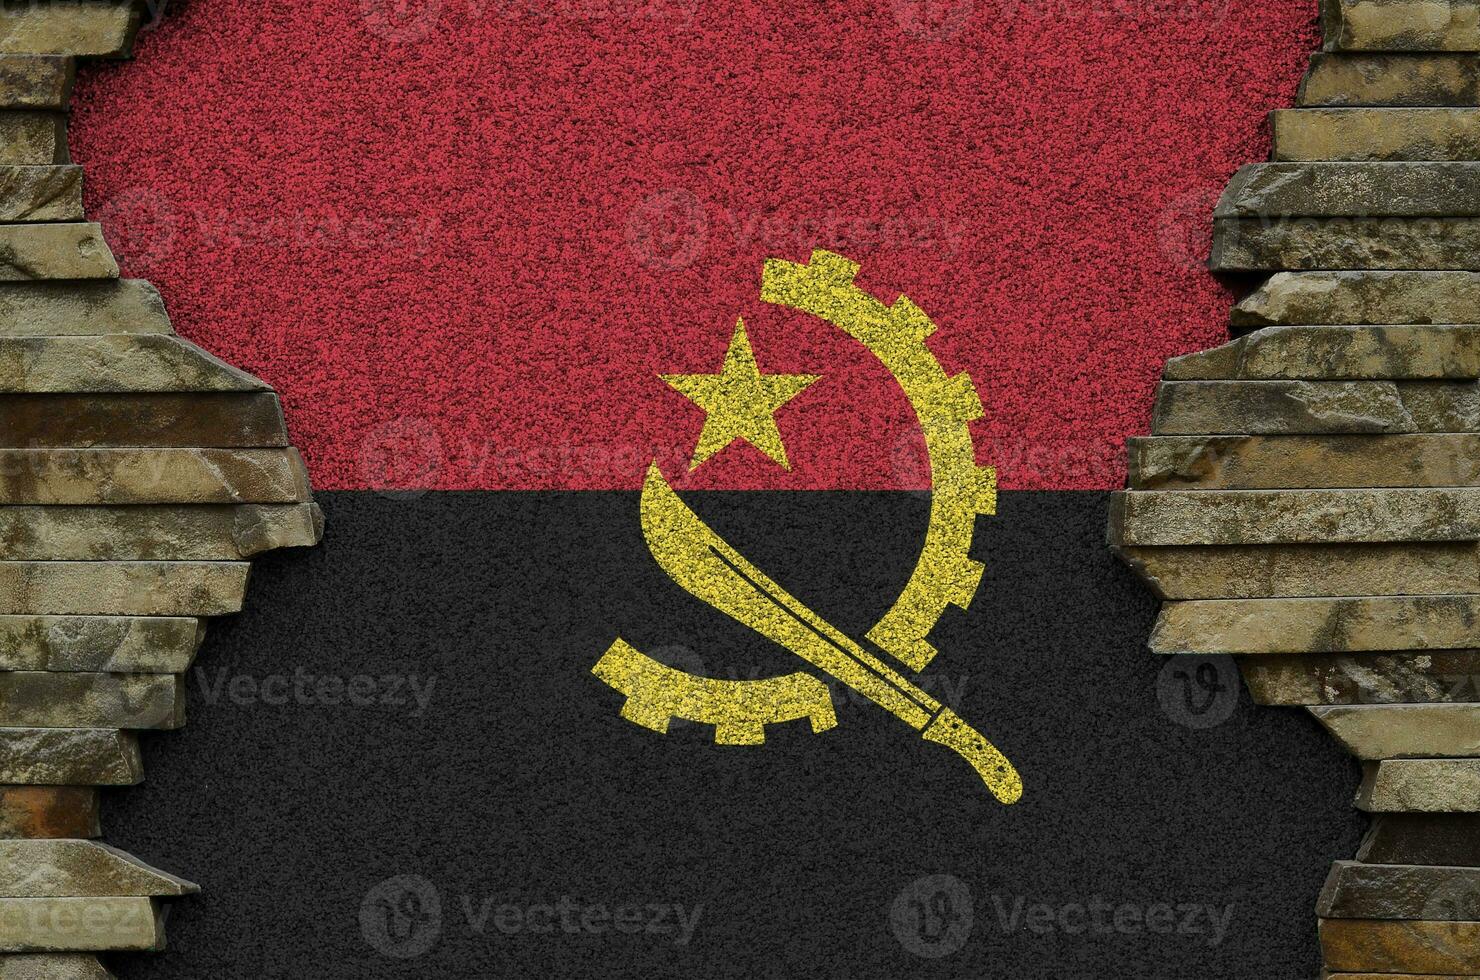 angola flagga avbildad i måla färger på gammal sten vägg närbild. texturerad baner på sten vägg bakgrund foto